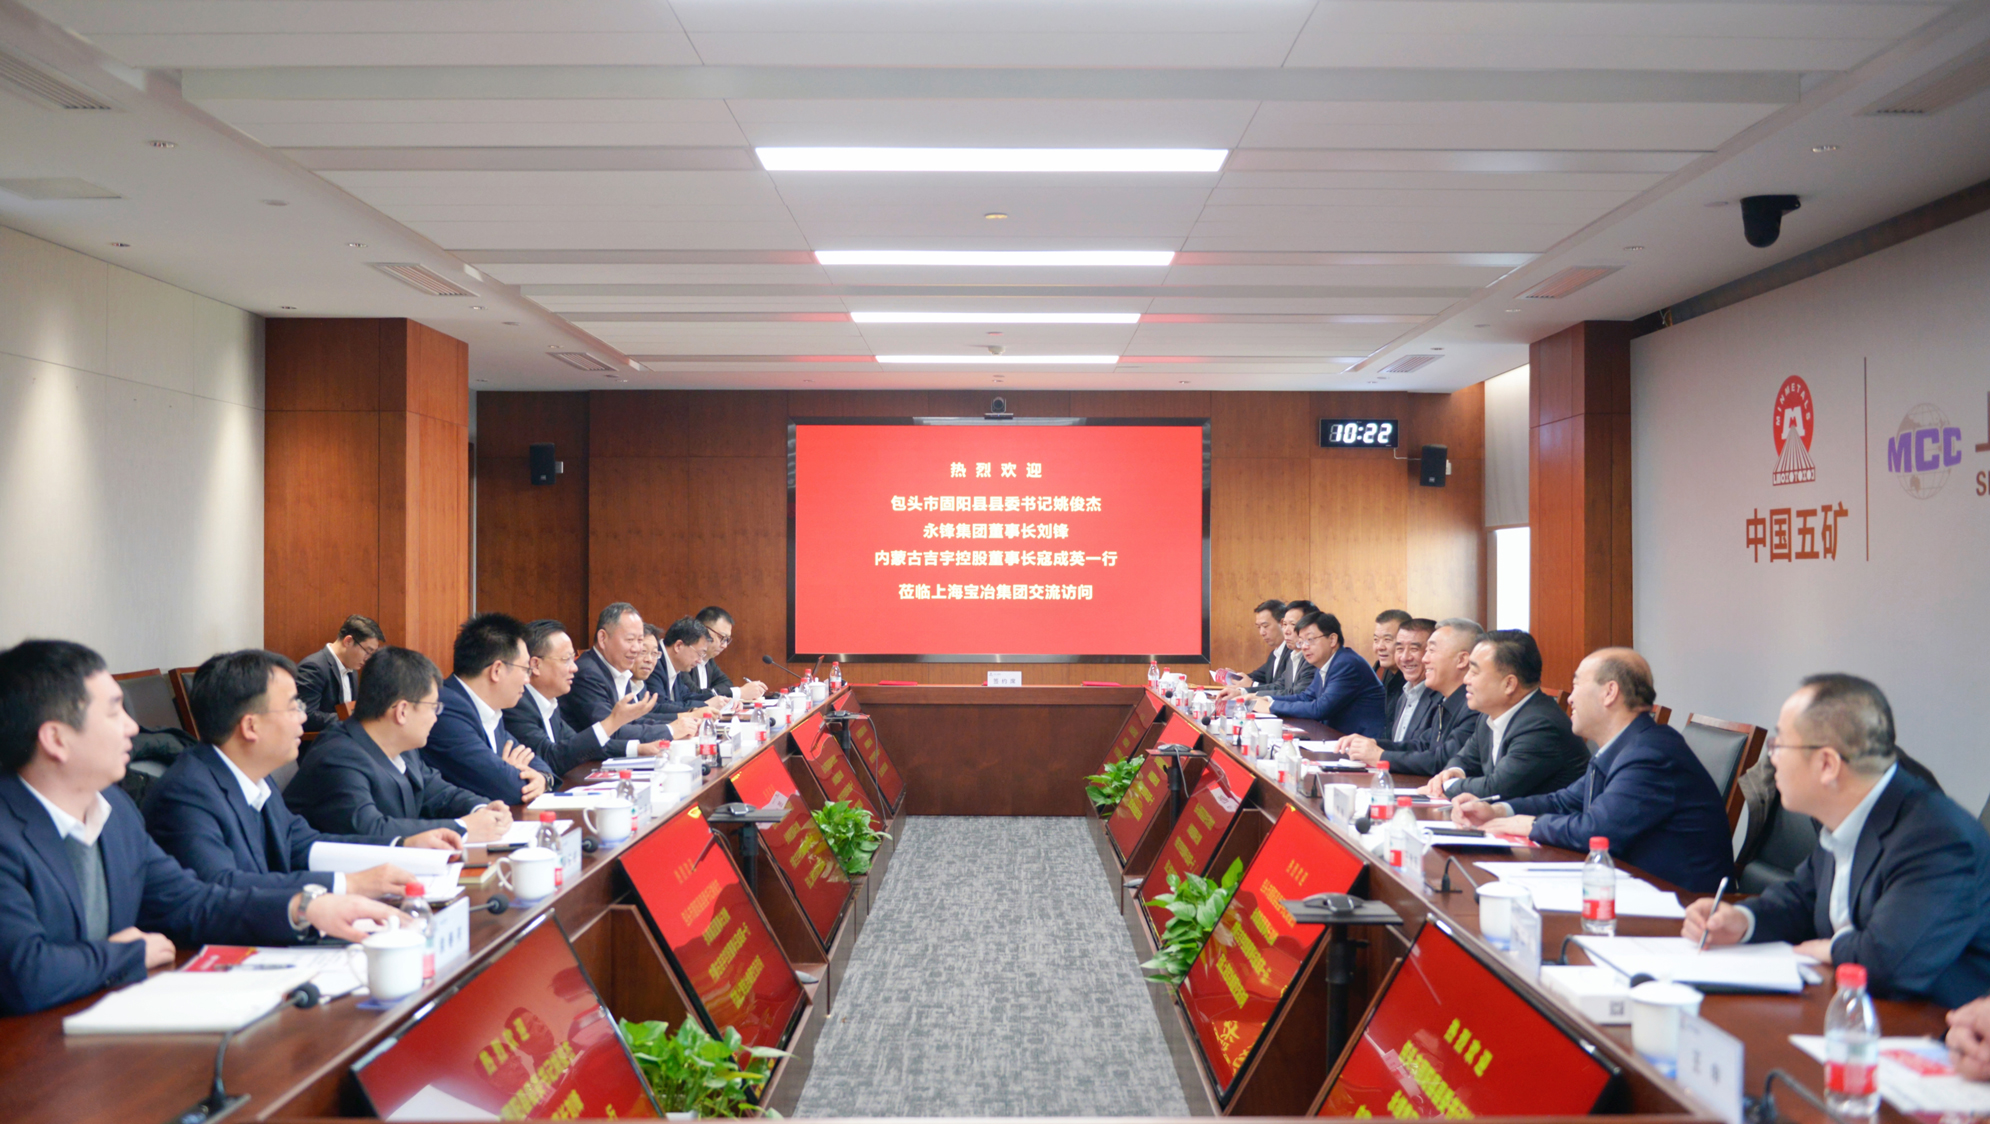 上海yd2333云顶电子游戏与永锋集团、内蒙古吉宇控股签署战略合作协议